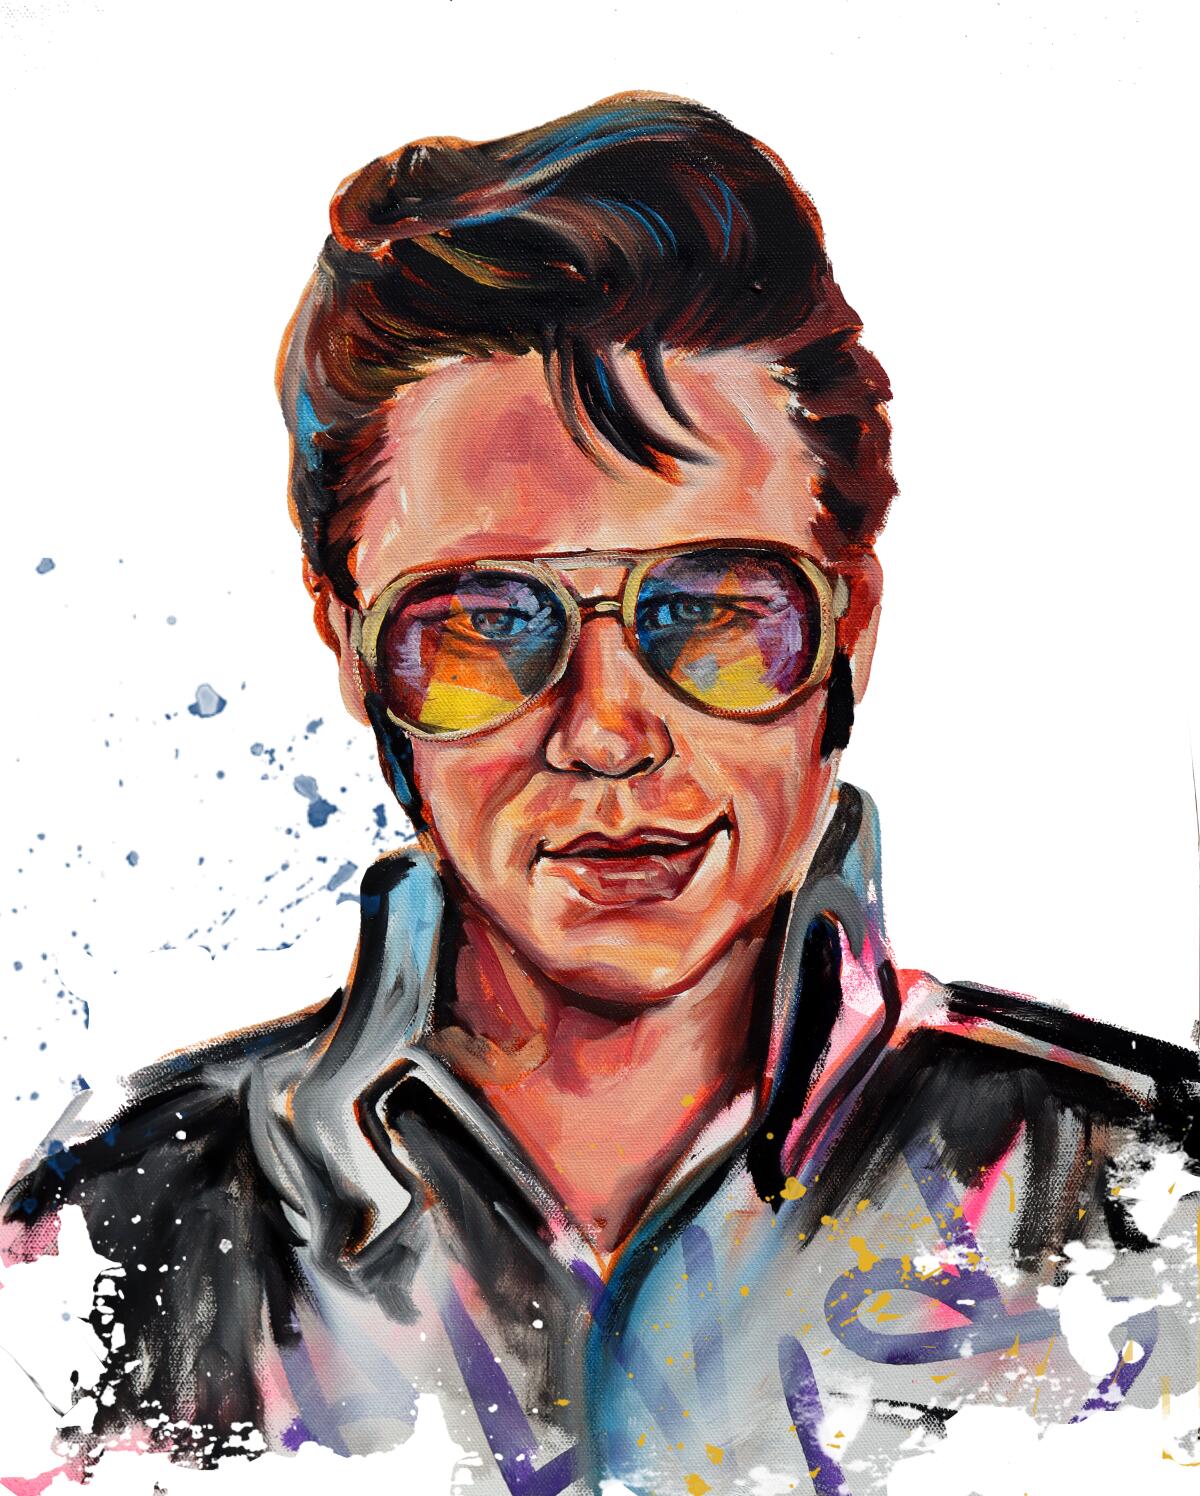 An illustration of Austin Butler as Elvis Presley.